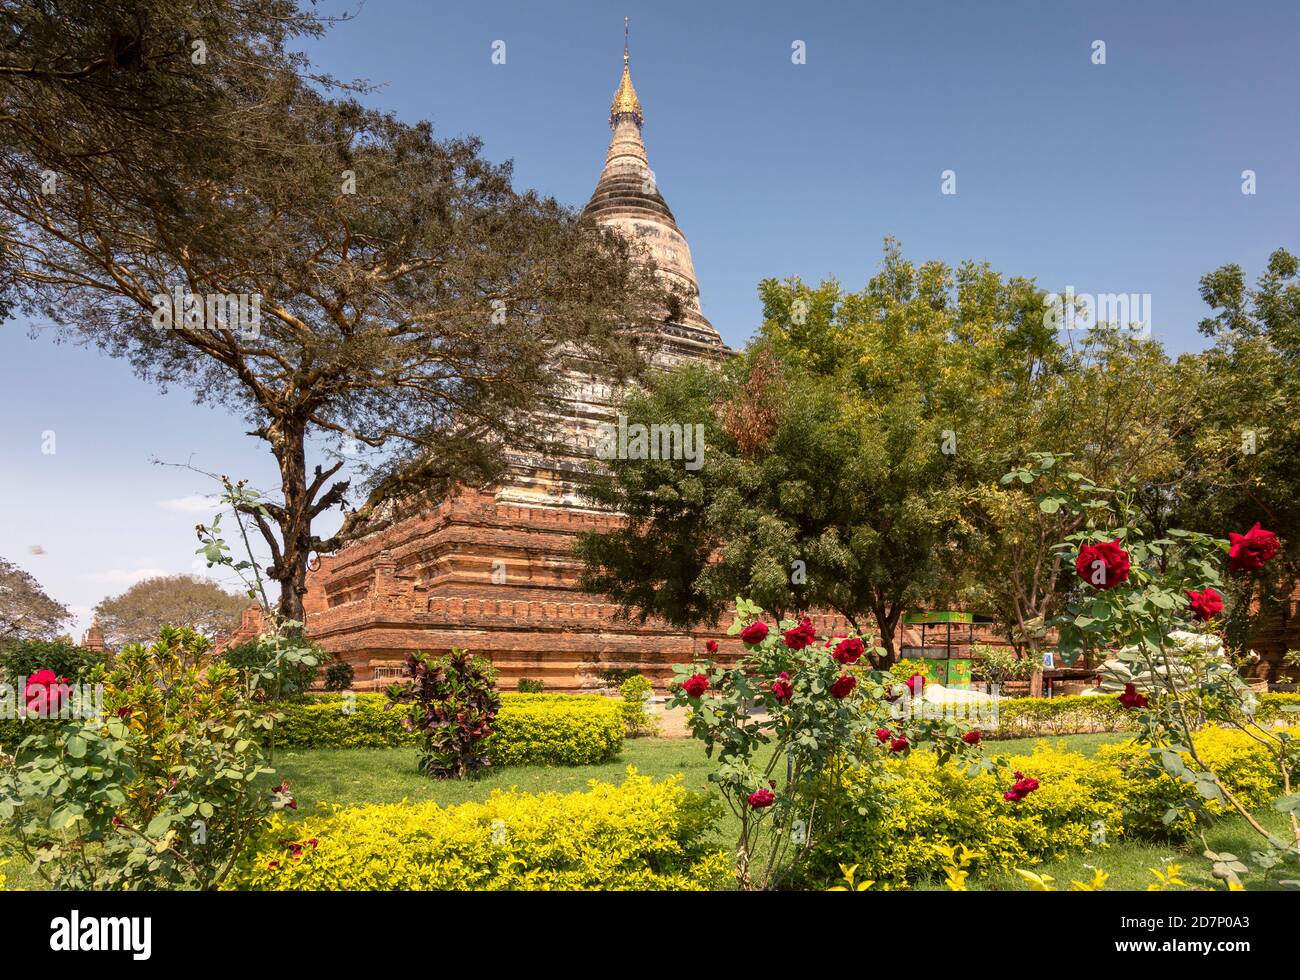 Ancient Shwesandaw Pagoda at Bagan, Myanmar Stock Photo